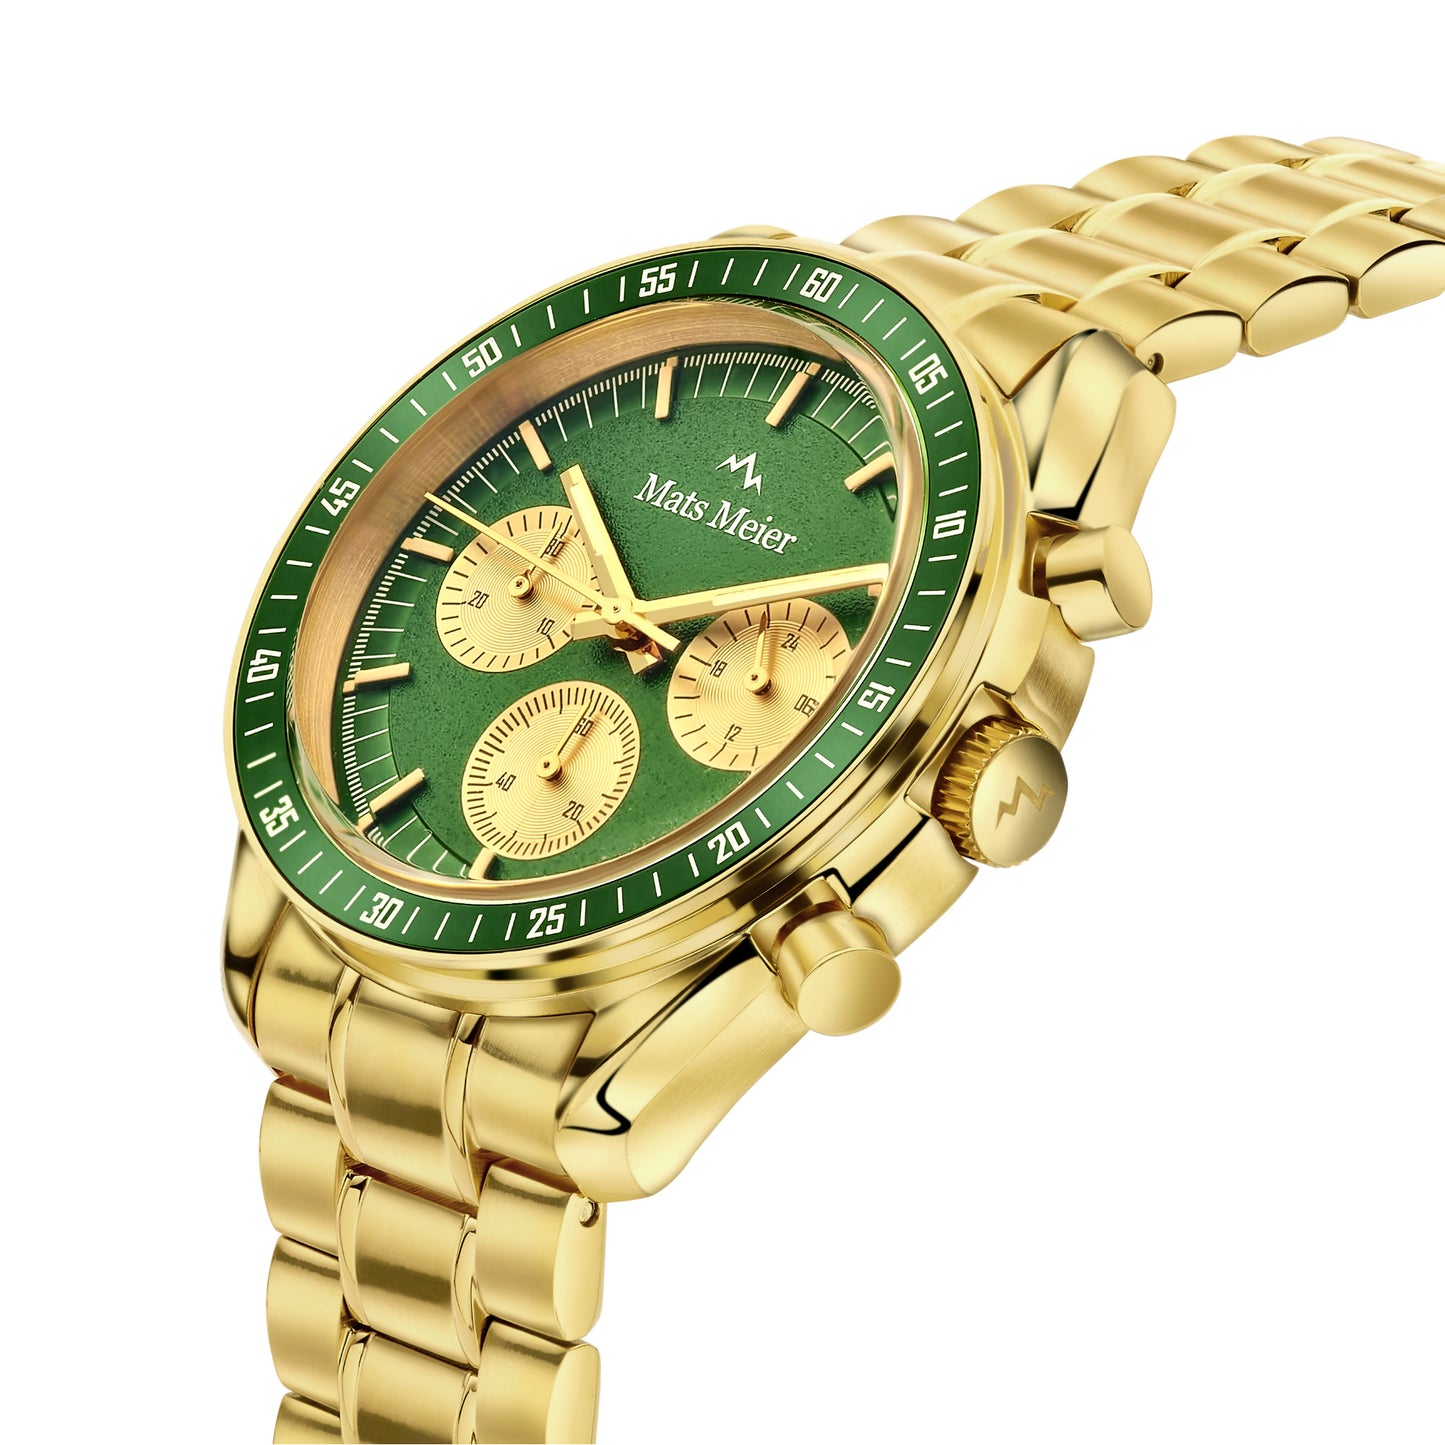 Arosa Racing Chronograph Herrenuhr goldfarben und grün